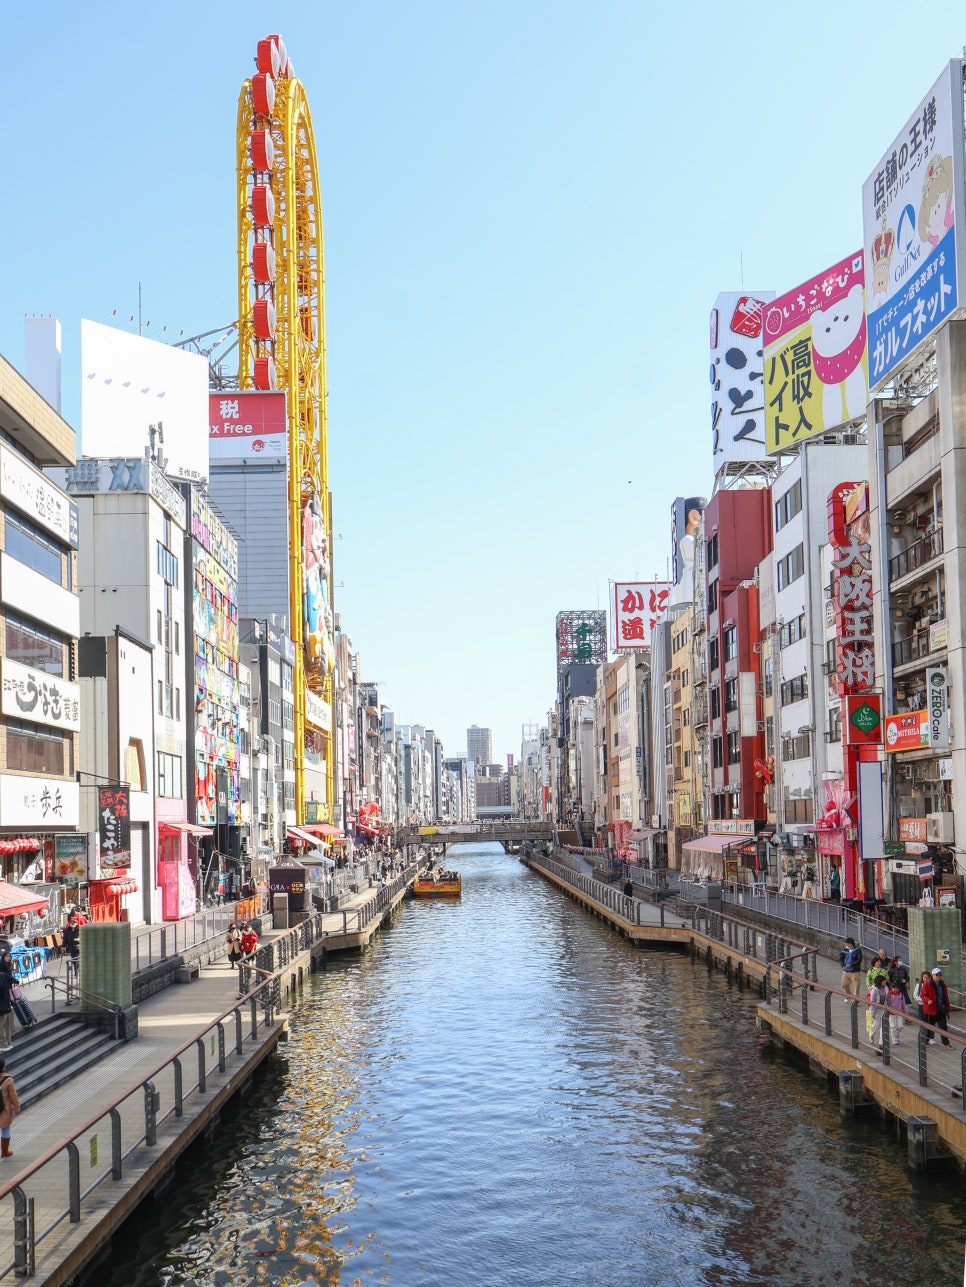 3월 해외여행추천 실시간 오사카 날씨 옷차림 feat. 일본포켓와이파이 도시락